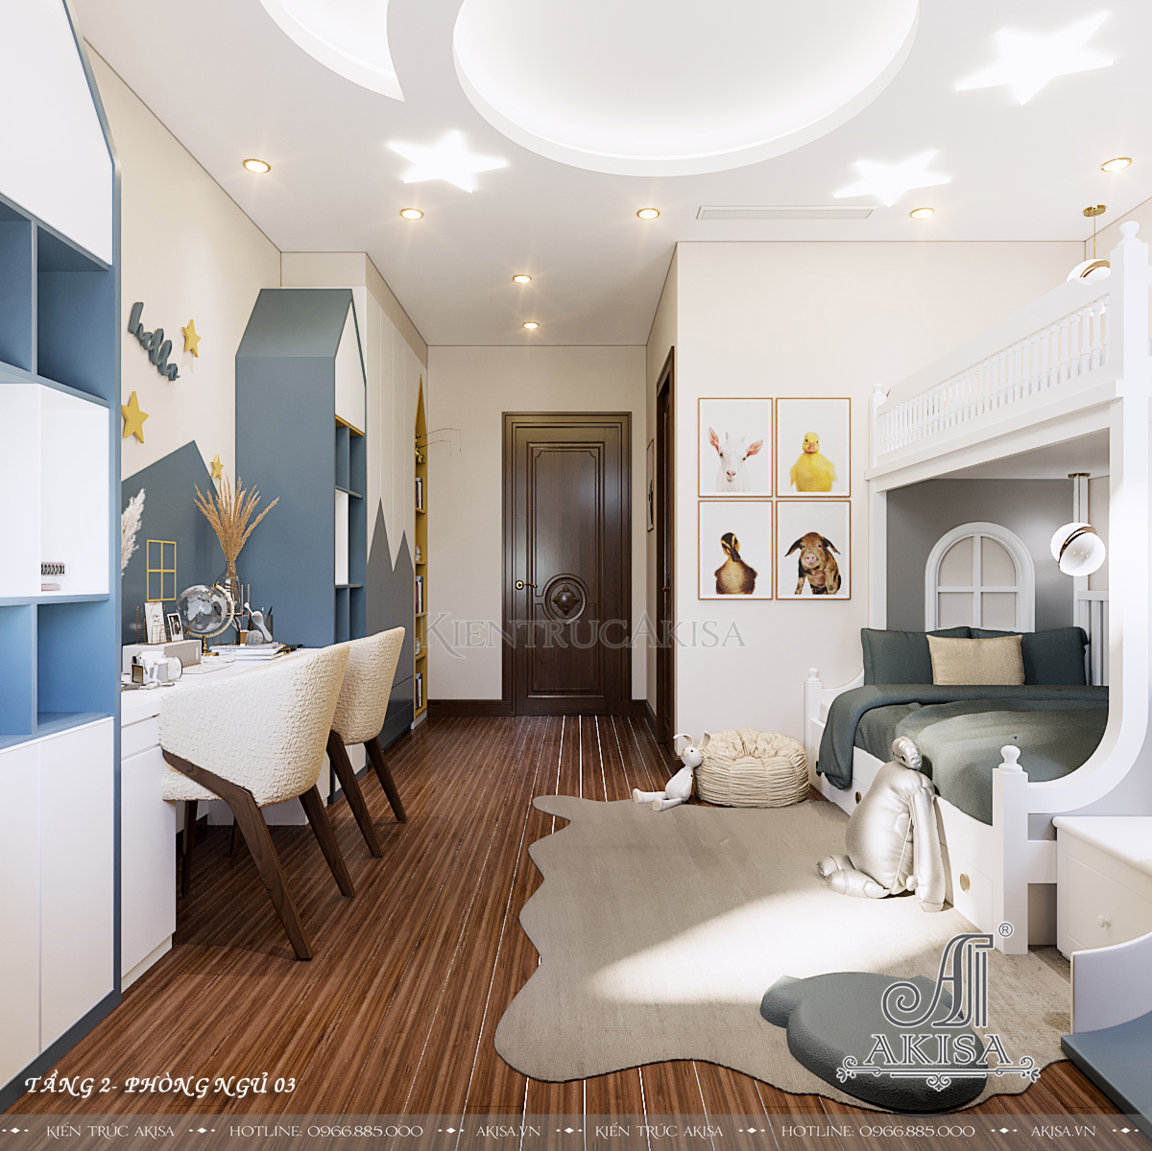 Phòng ngủ 3 dành cho bé trai được thiết kế với gam màu trắng - xanh đẹp mắt với chủ đề hoạt hình đơn giản và đáng yêu